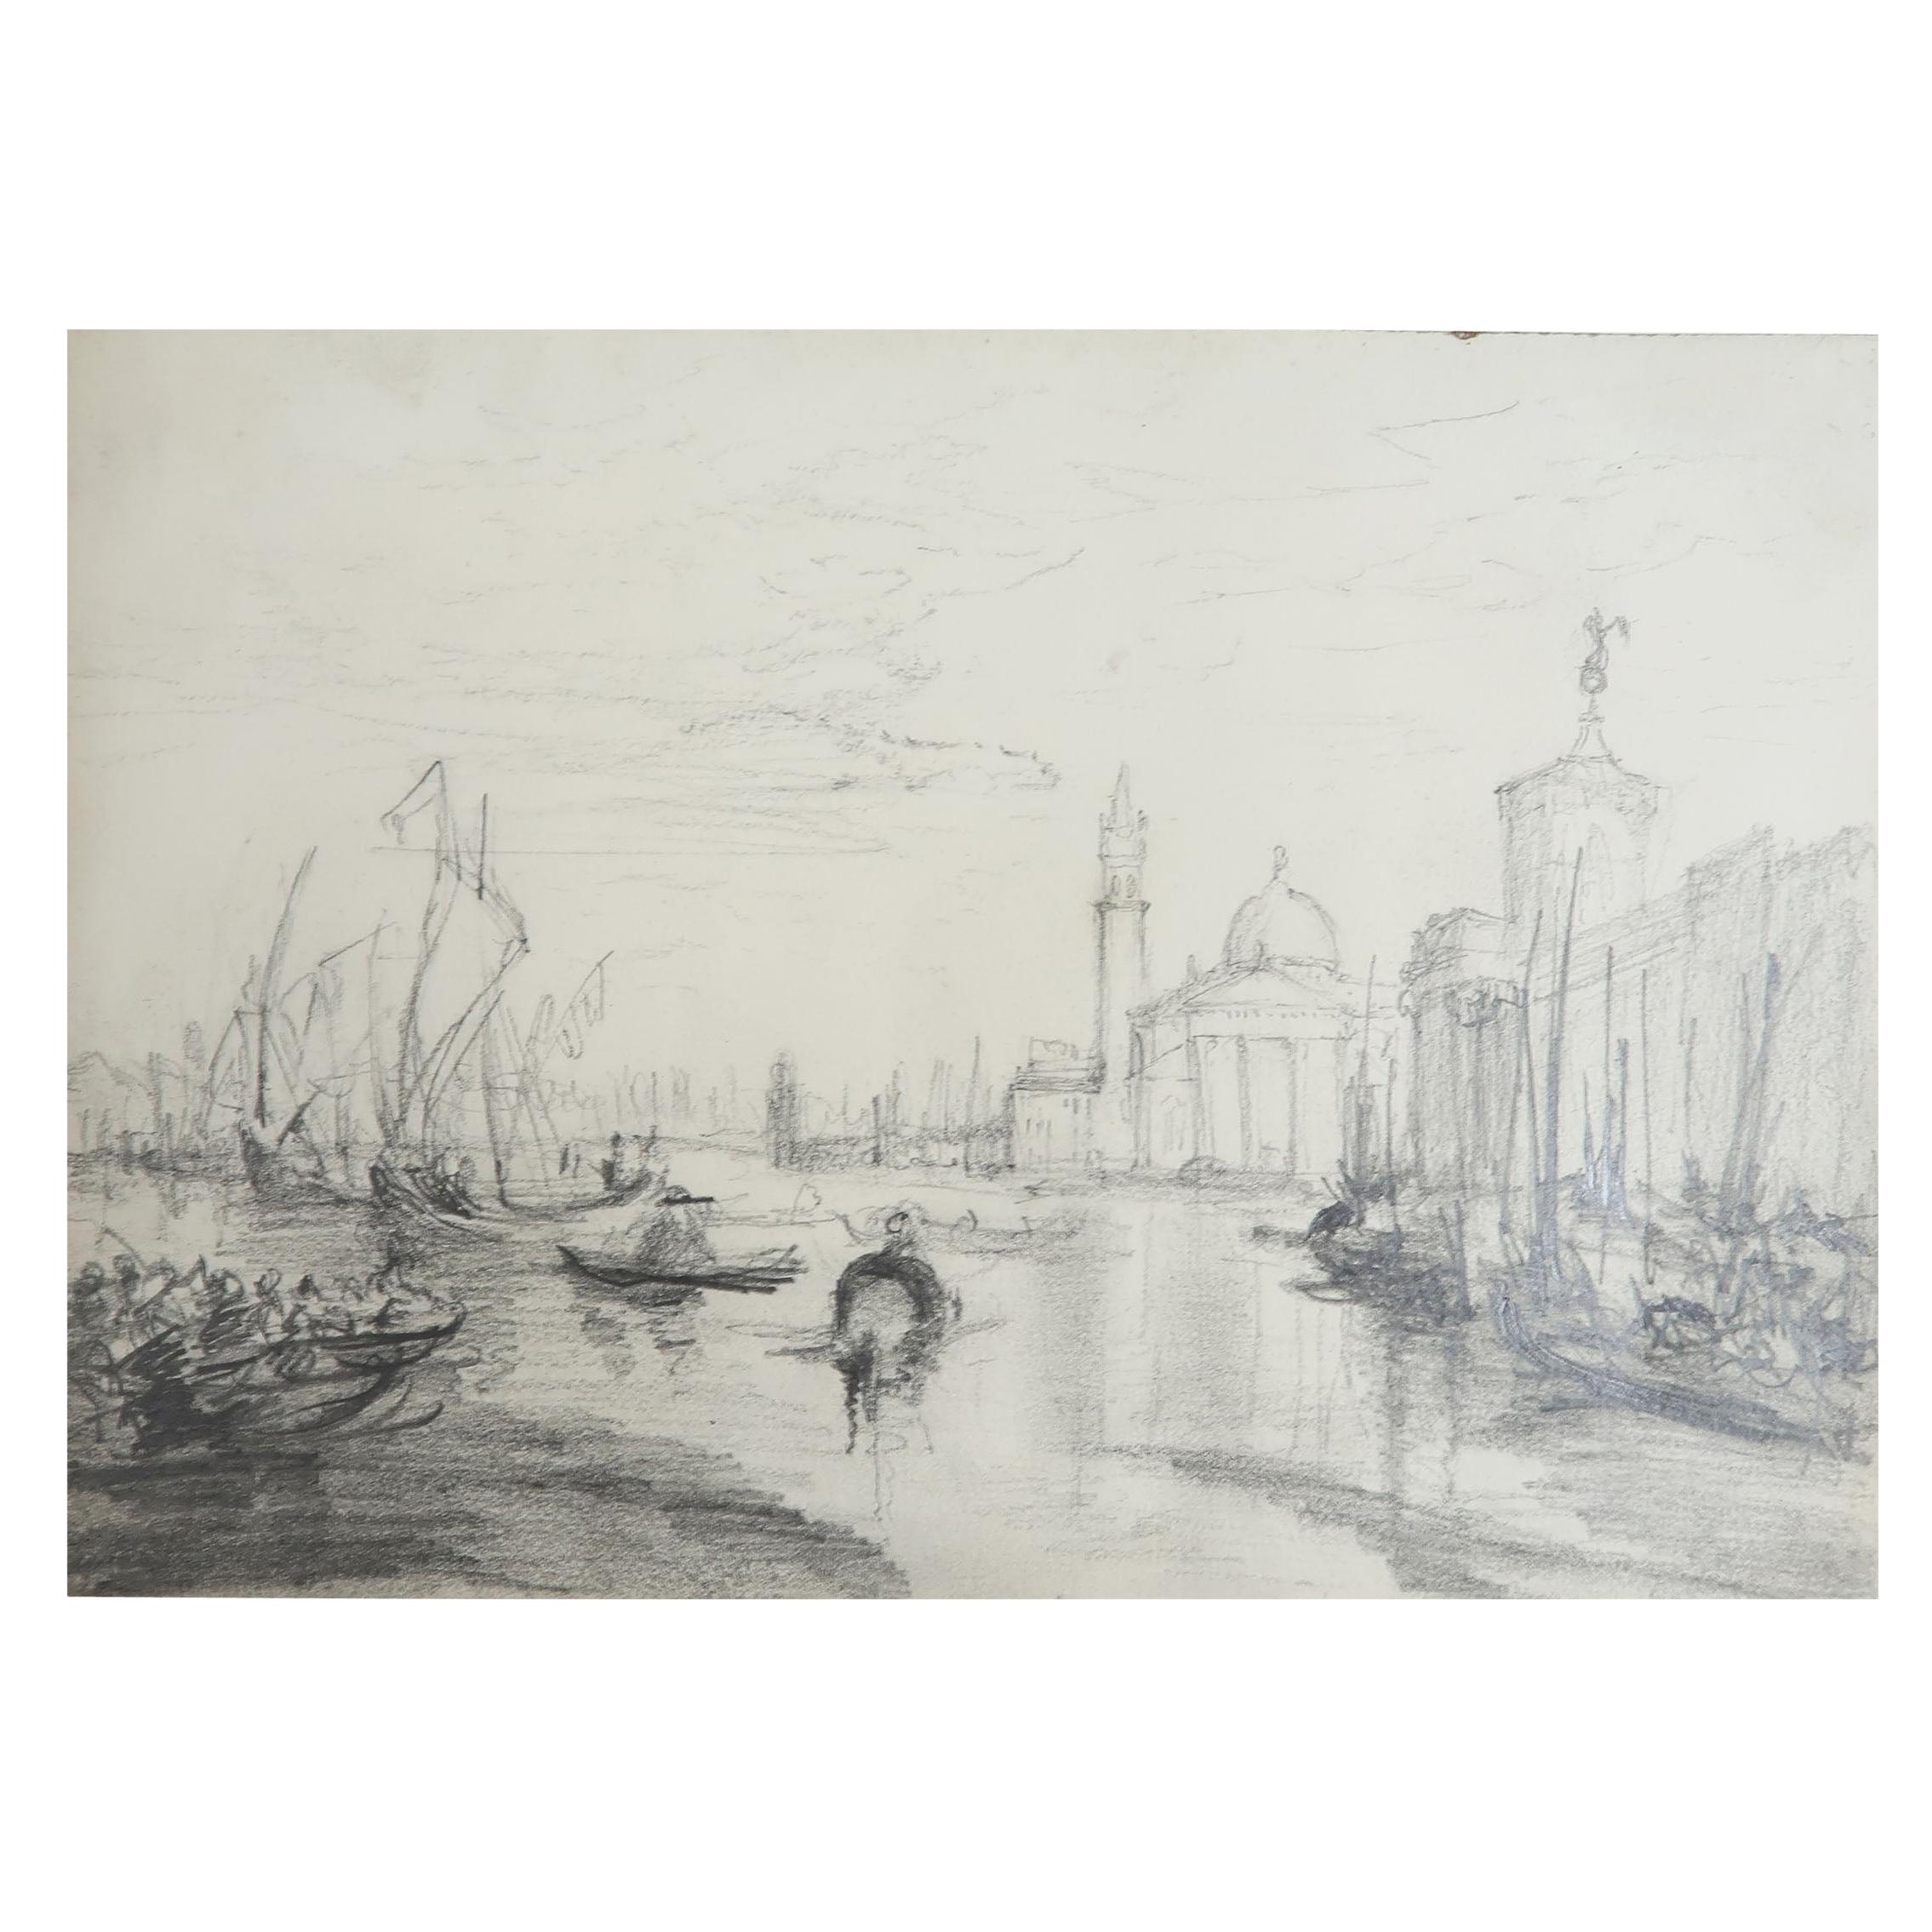 Buy Rialto Bridge in Venice Italy. Handmade Painting by JAYASHREE BHOJRAJ.  Code:ART_7954_55387 - Paintings for Sale online in India.